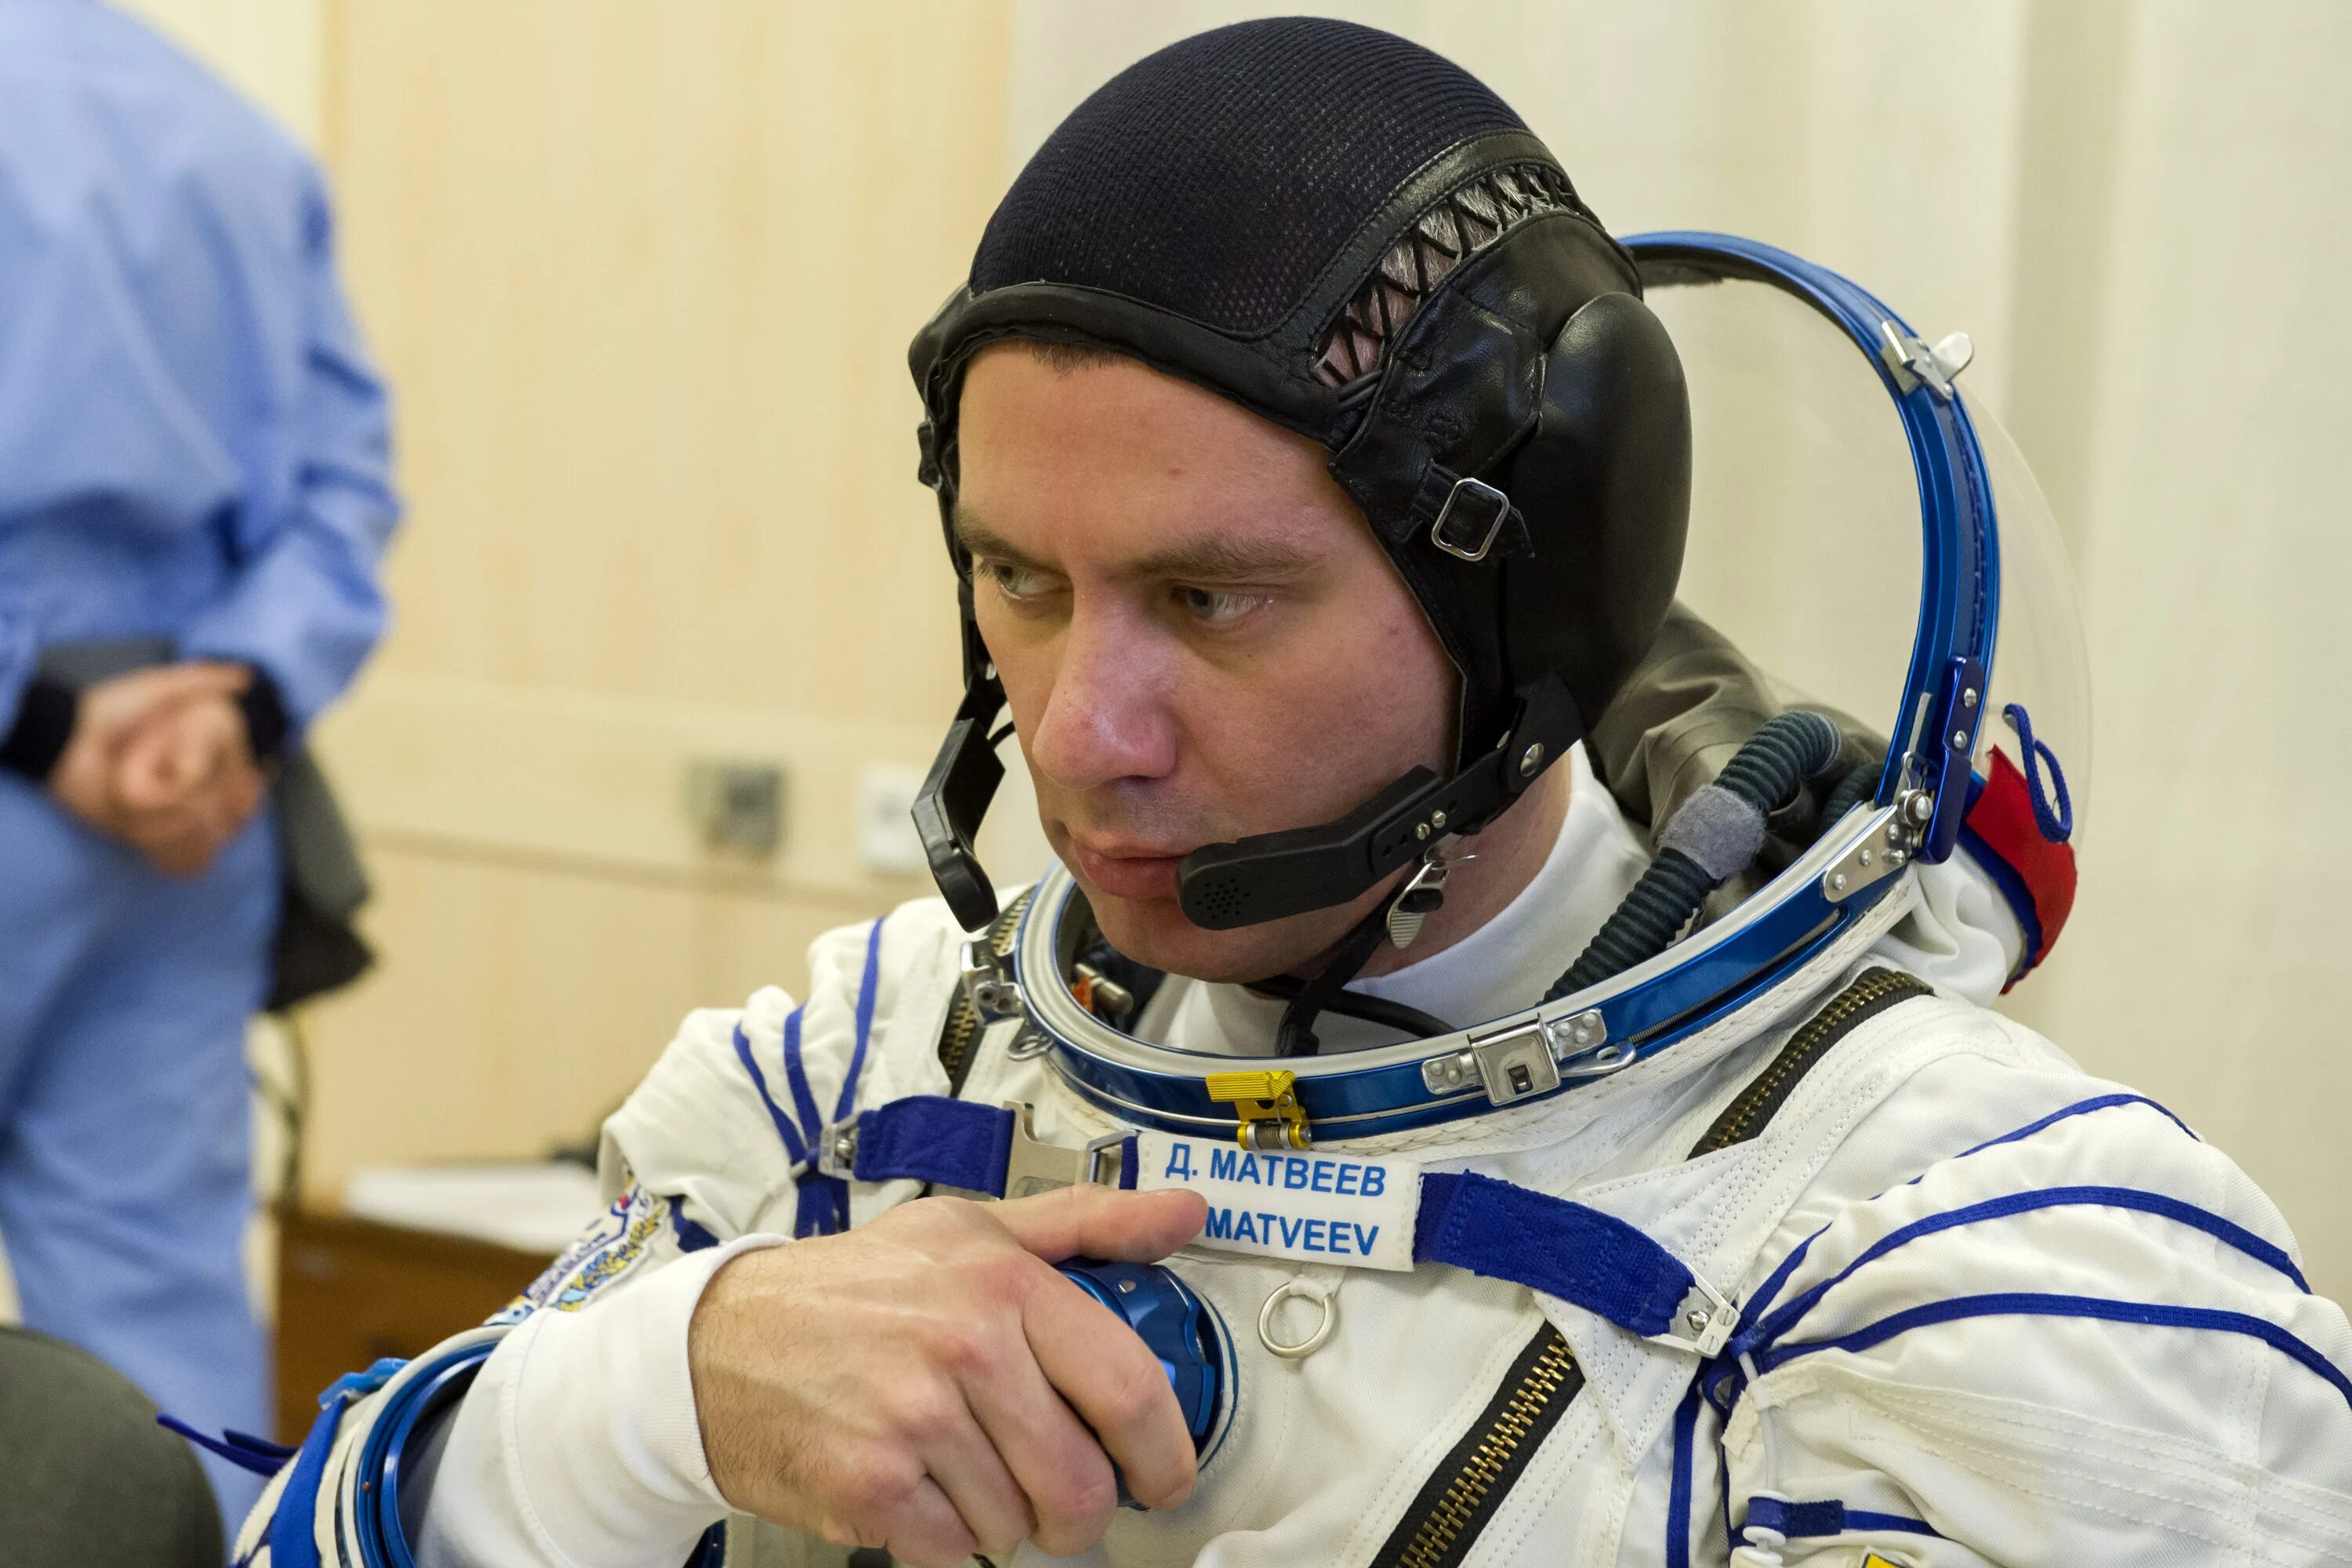 1 космонавт который вышел в открытый космос. Выход Леонова в открытый космос. Фото Космонавта Матвеева.